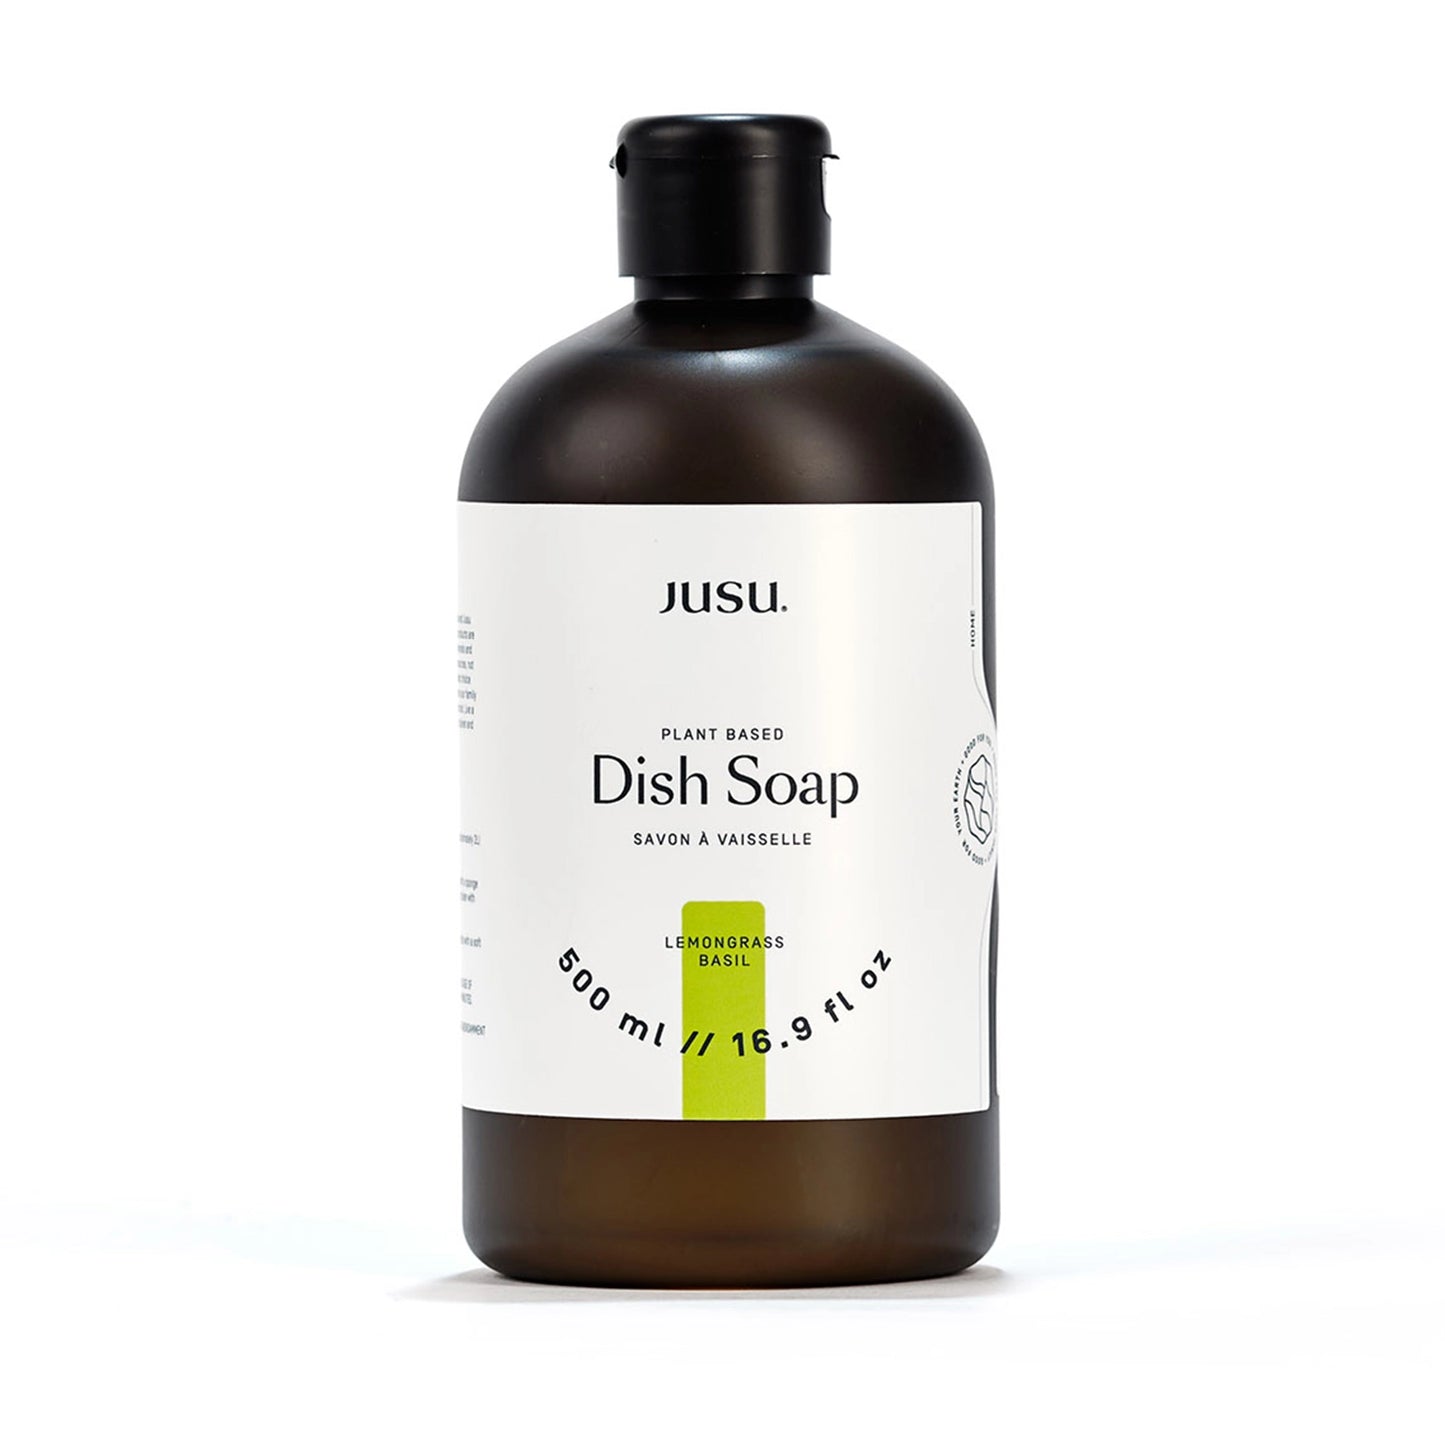 DISH SOAP - LEMONGRASS BASIL